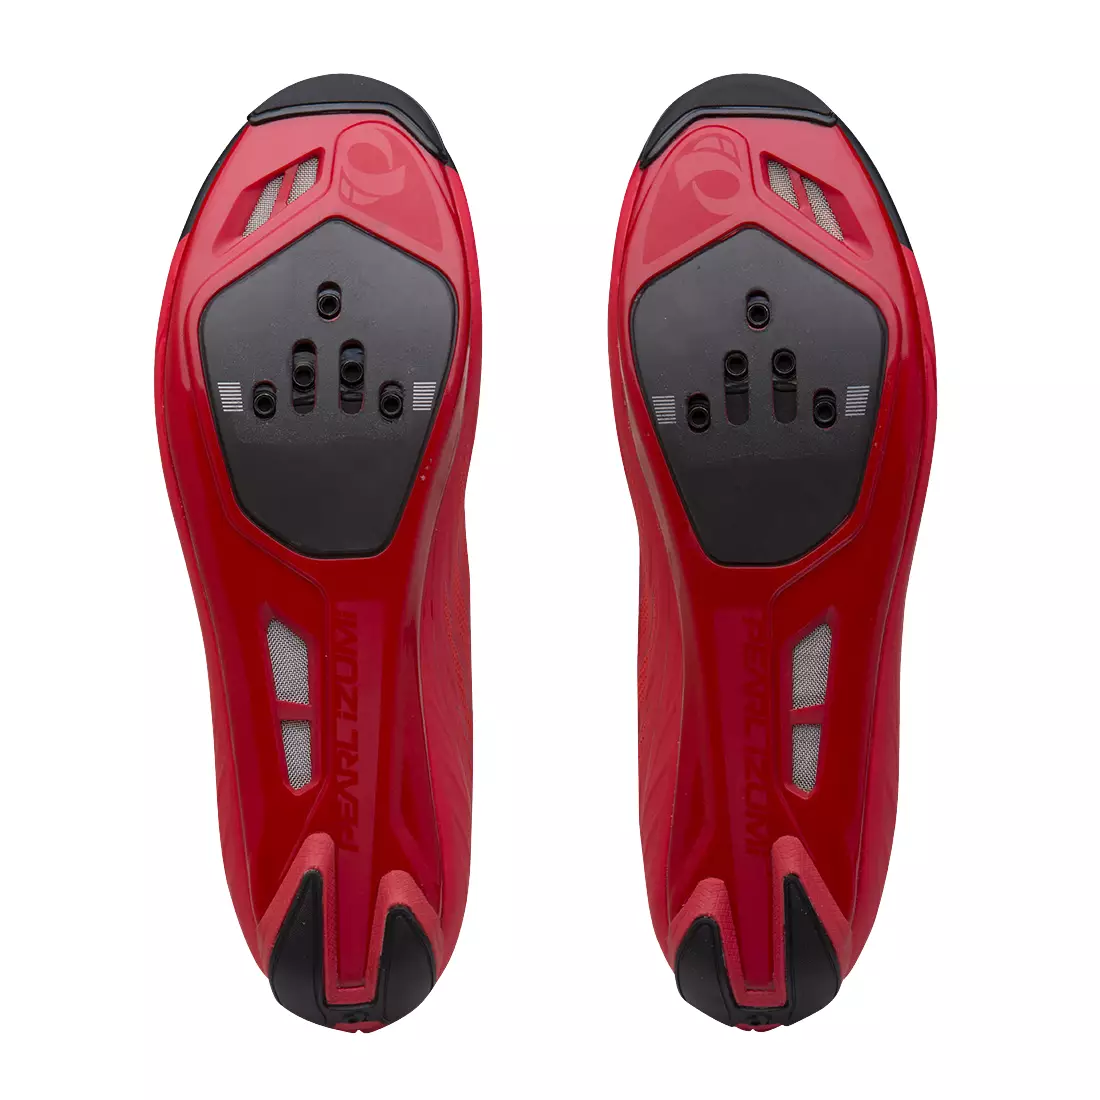 PEARL IZUMI Race Road V5 15101801 - férfi országúti kerékpáros cipő, Rogue Red/Black